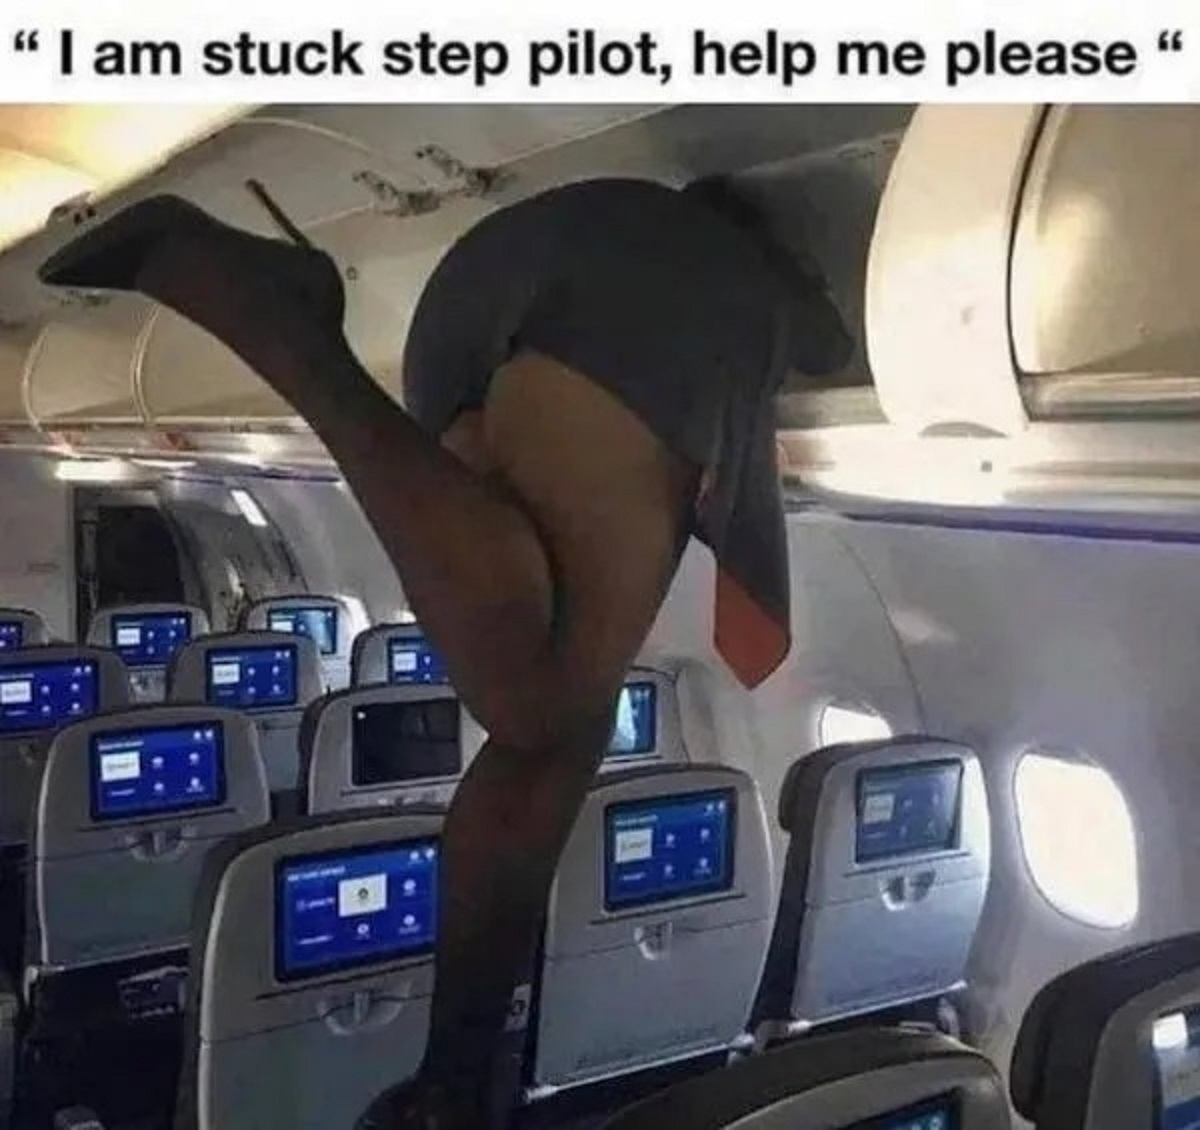 am stuck step pilot - "I am stuck step pilot, help me please "